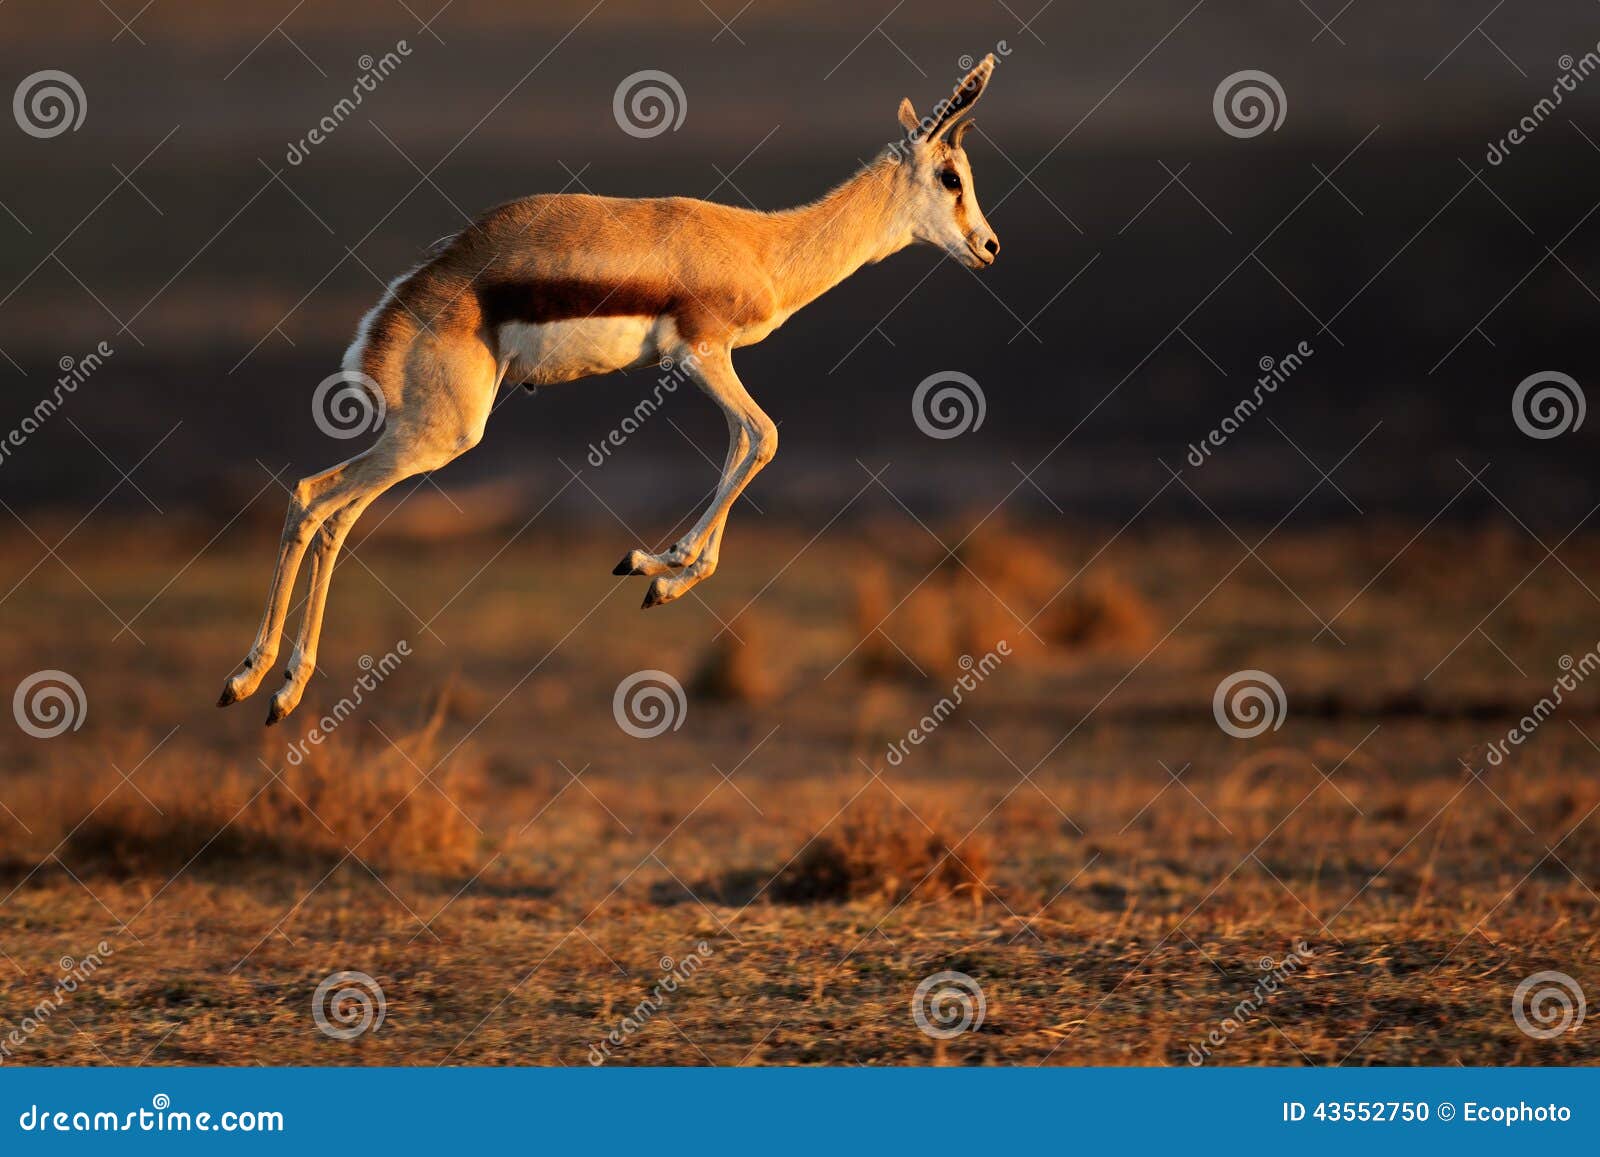 springbok antelope jumping